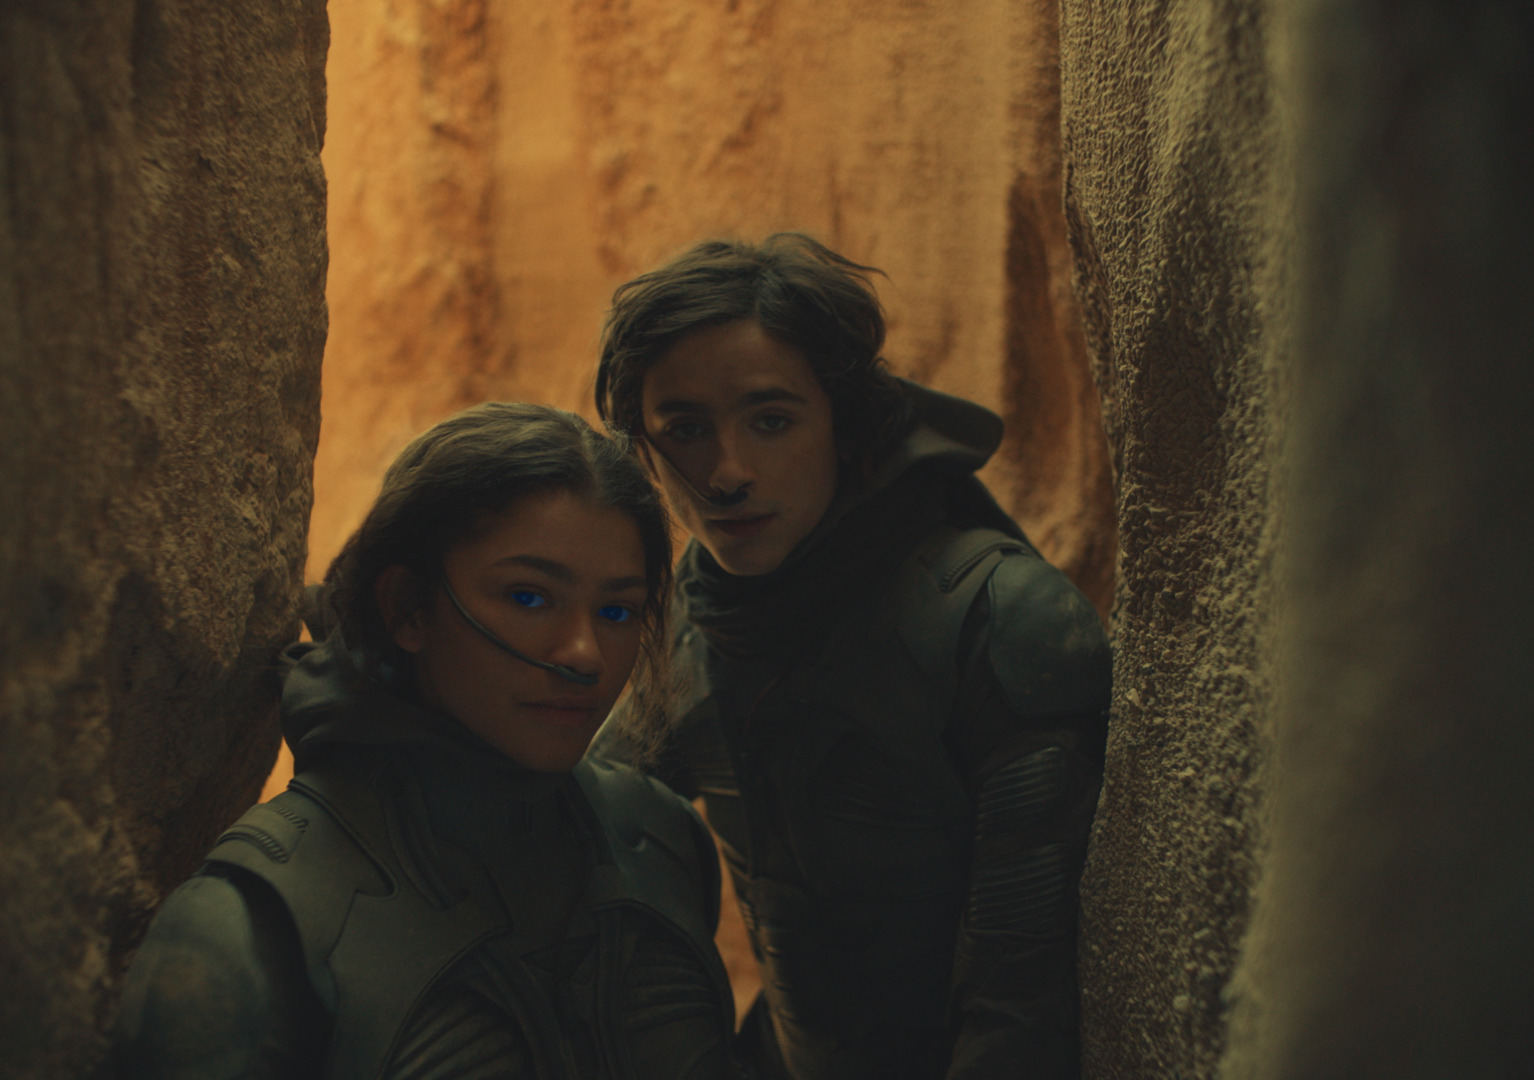 Zendaya and Timothée Chalamet stand in a desert cavern in Denis Villeneuve's Dune movie